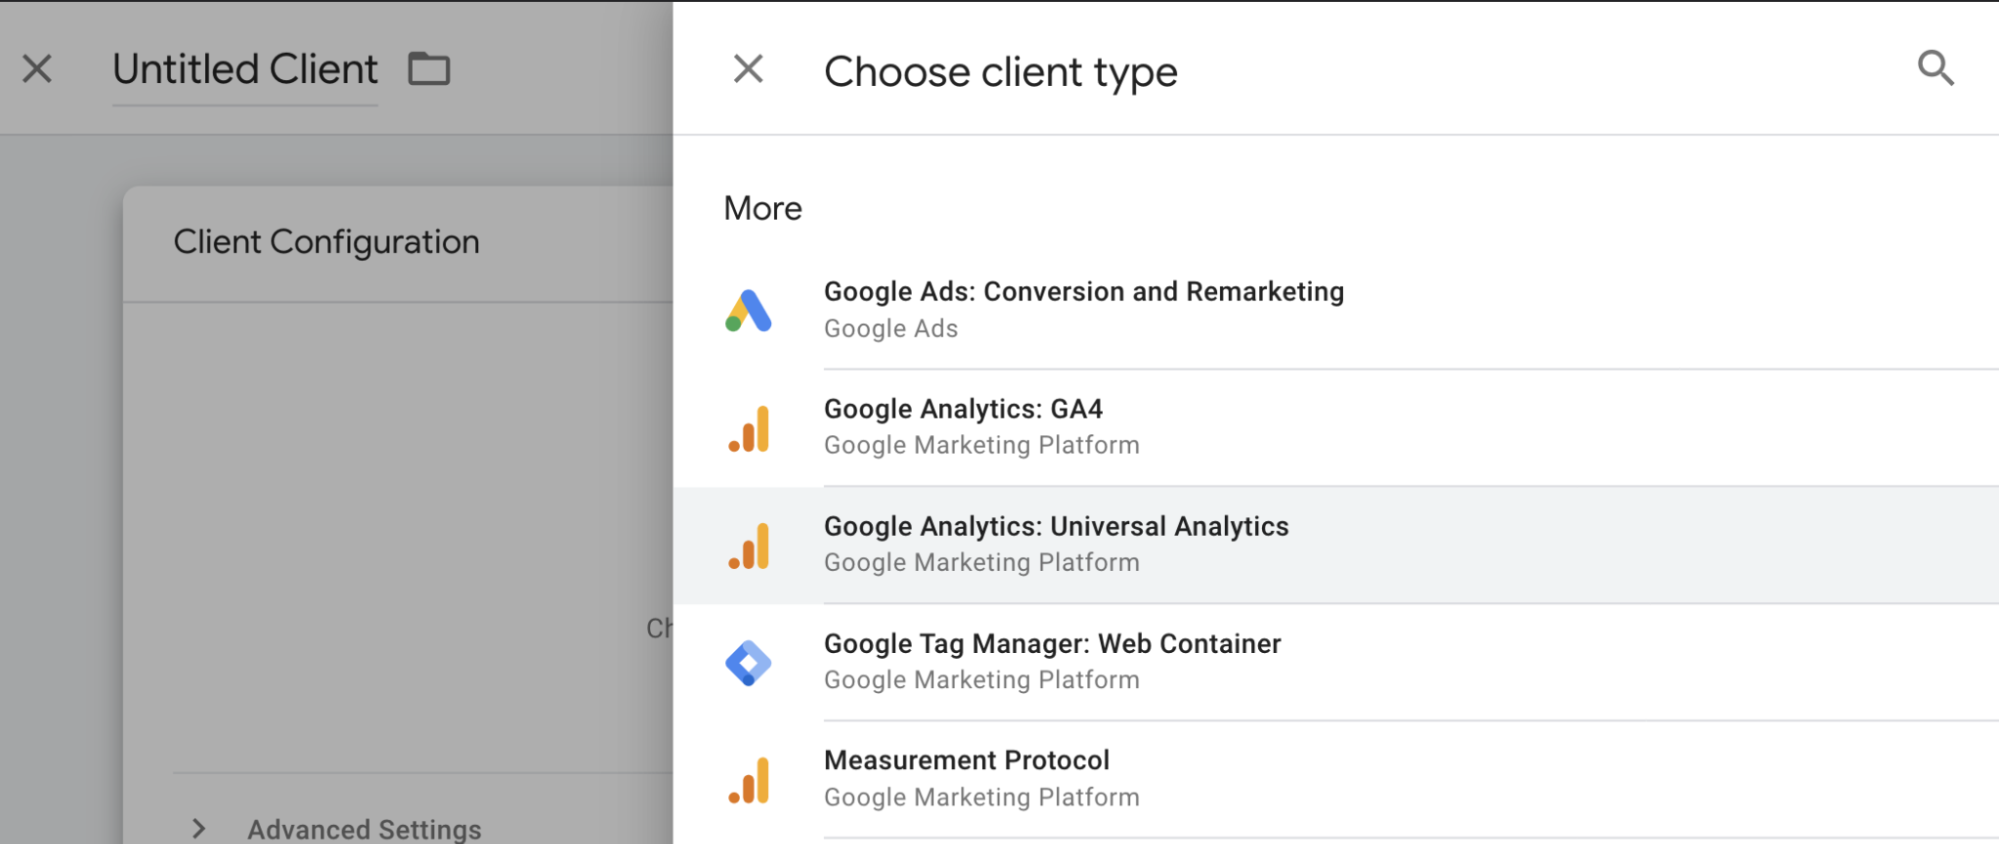 Cuadro de diálogo de selección del tipo de cliente, en el que se resalta el cliente Google Analytics: Universal Analytics